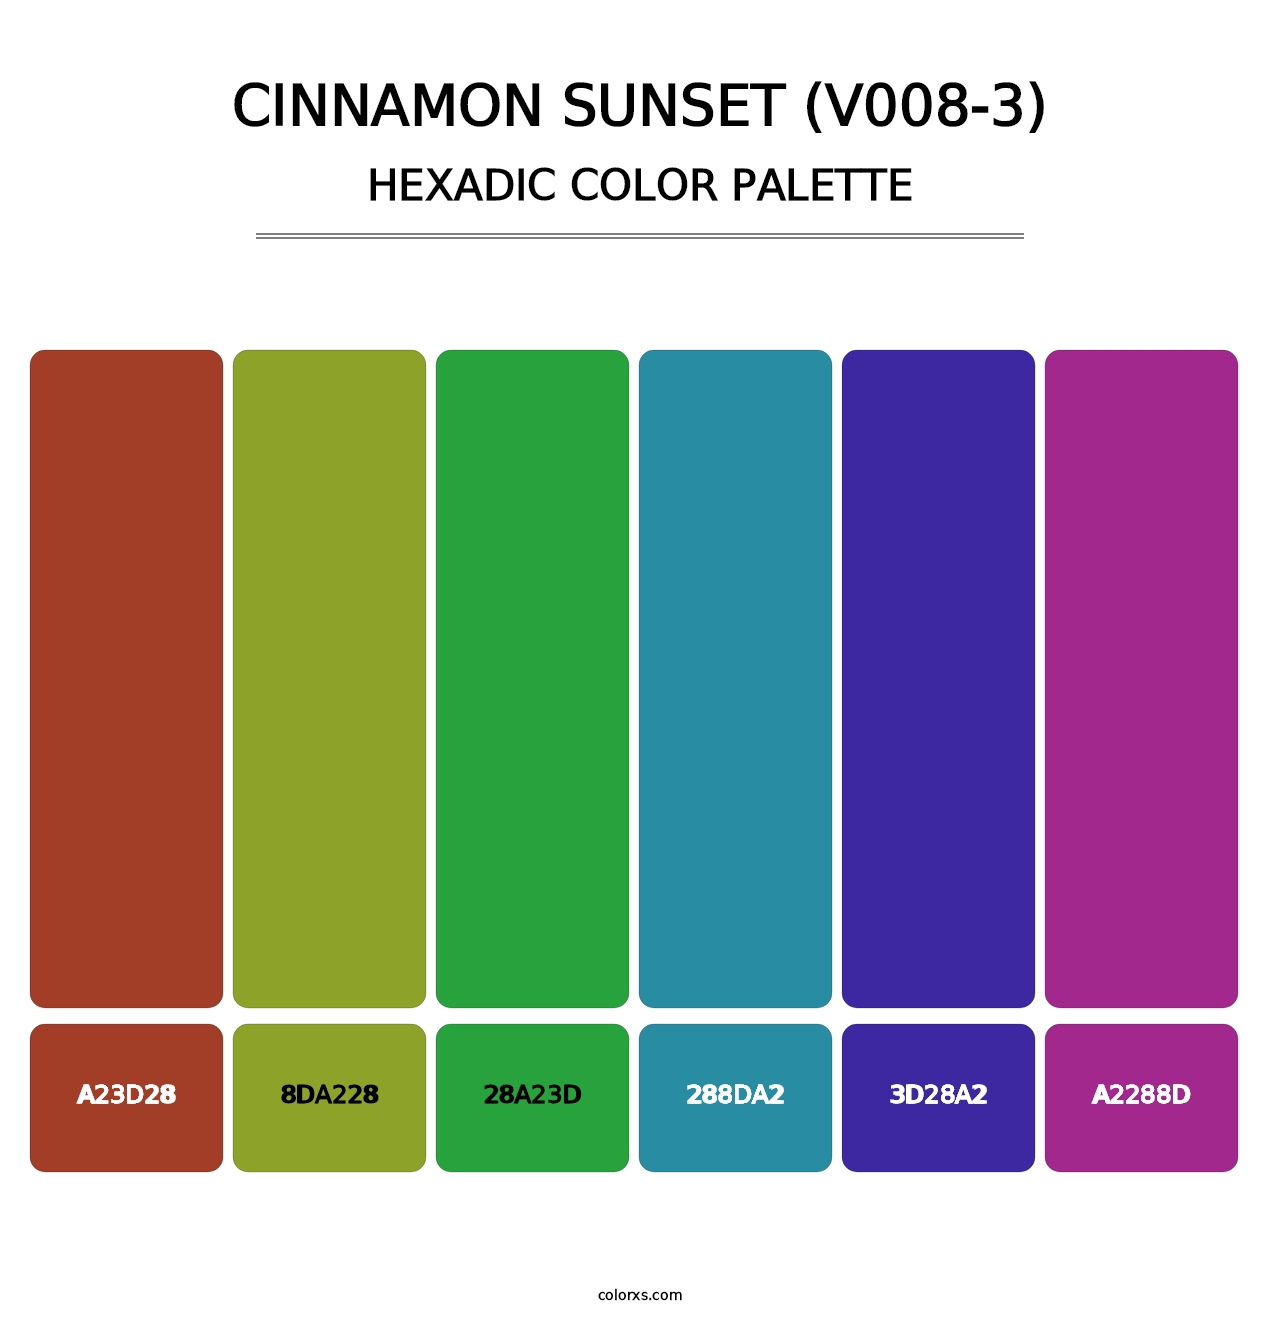 Cinnamon Sunset (V008-3) - Hexadic Color Palette